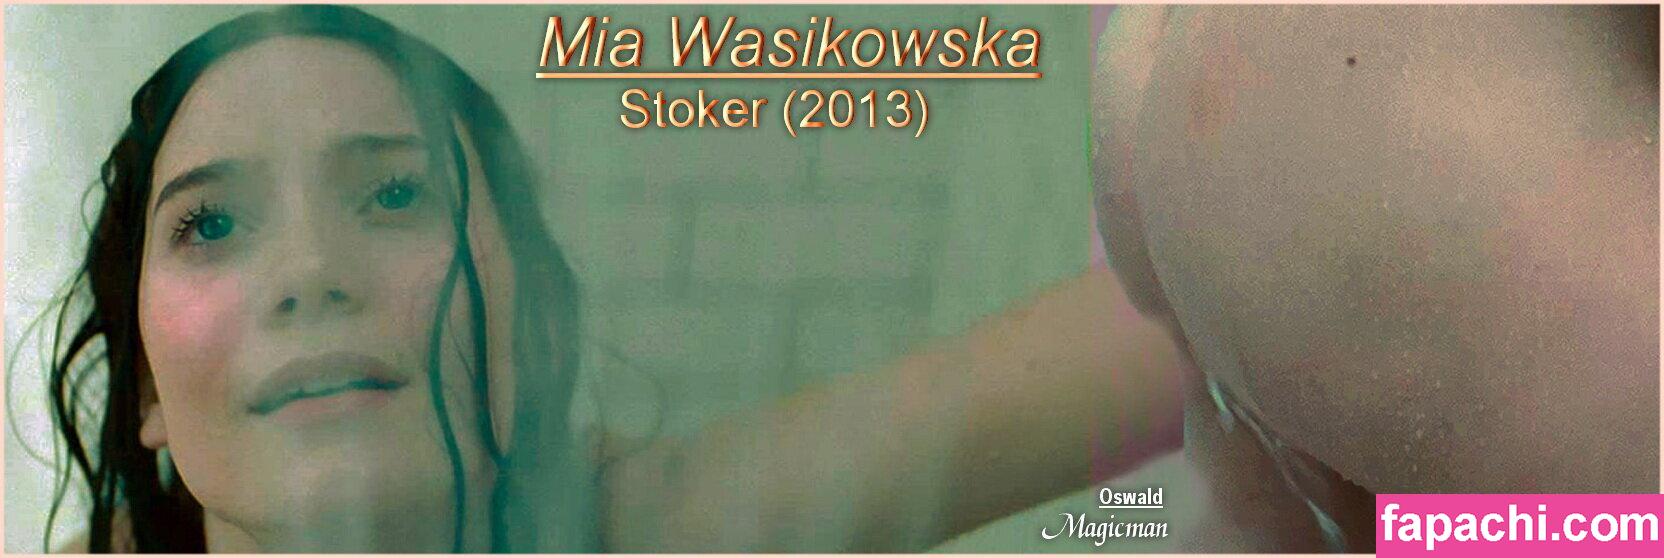 Mia Wasikowska / mia_wasikowska_ leaked nude photo #0014 from OnlyFans/Patreon